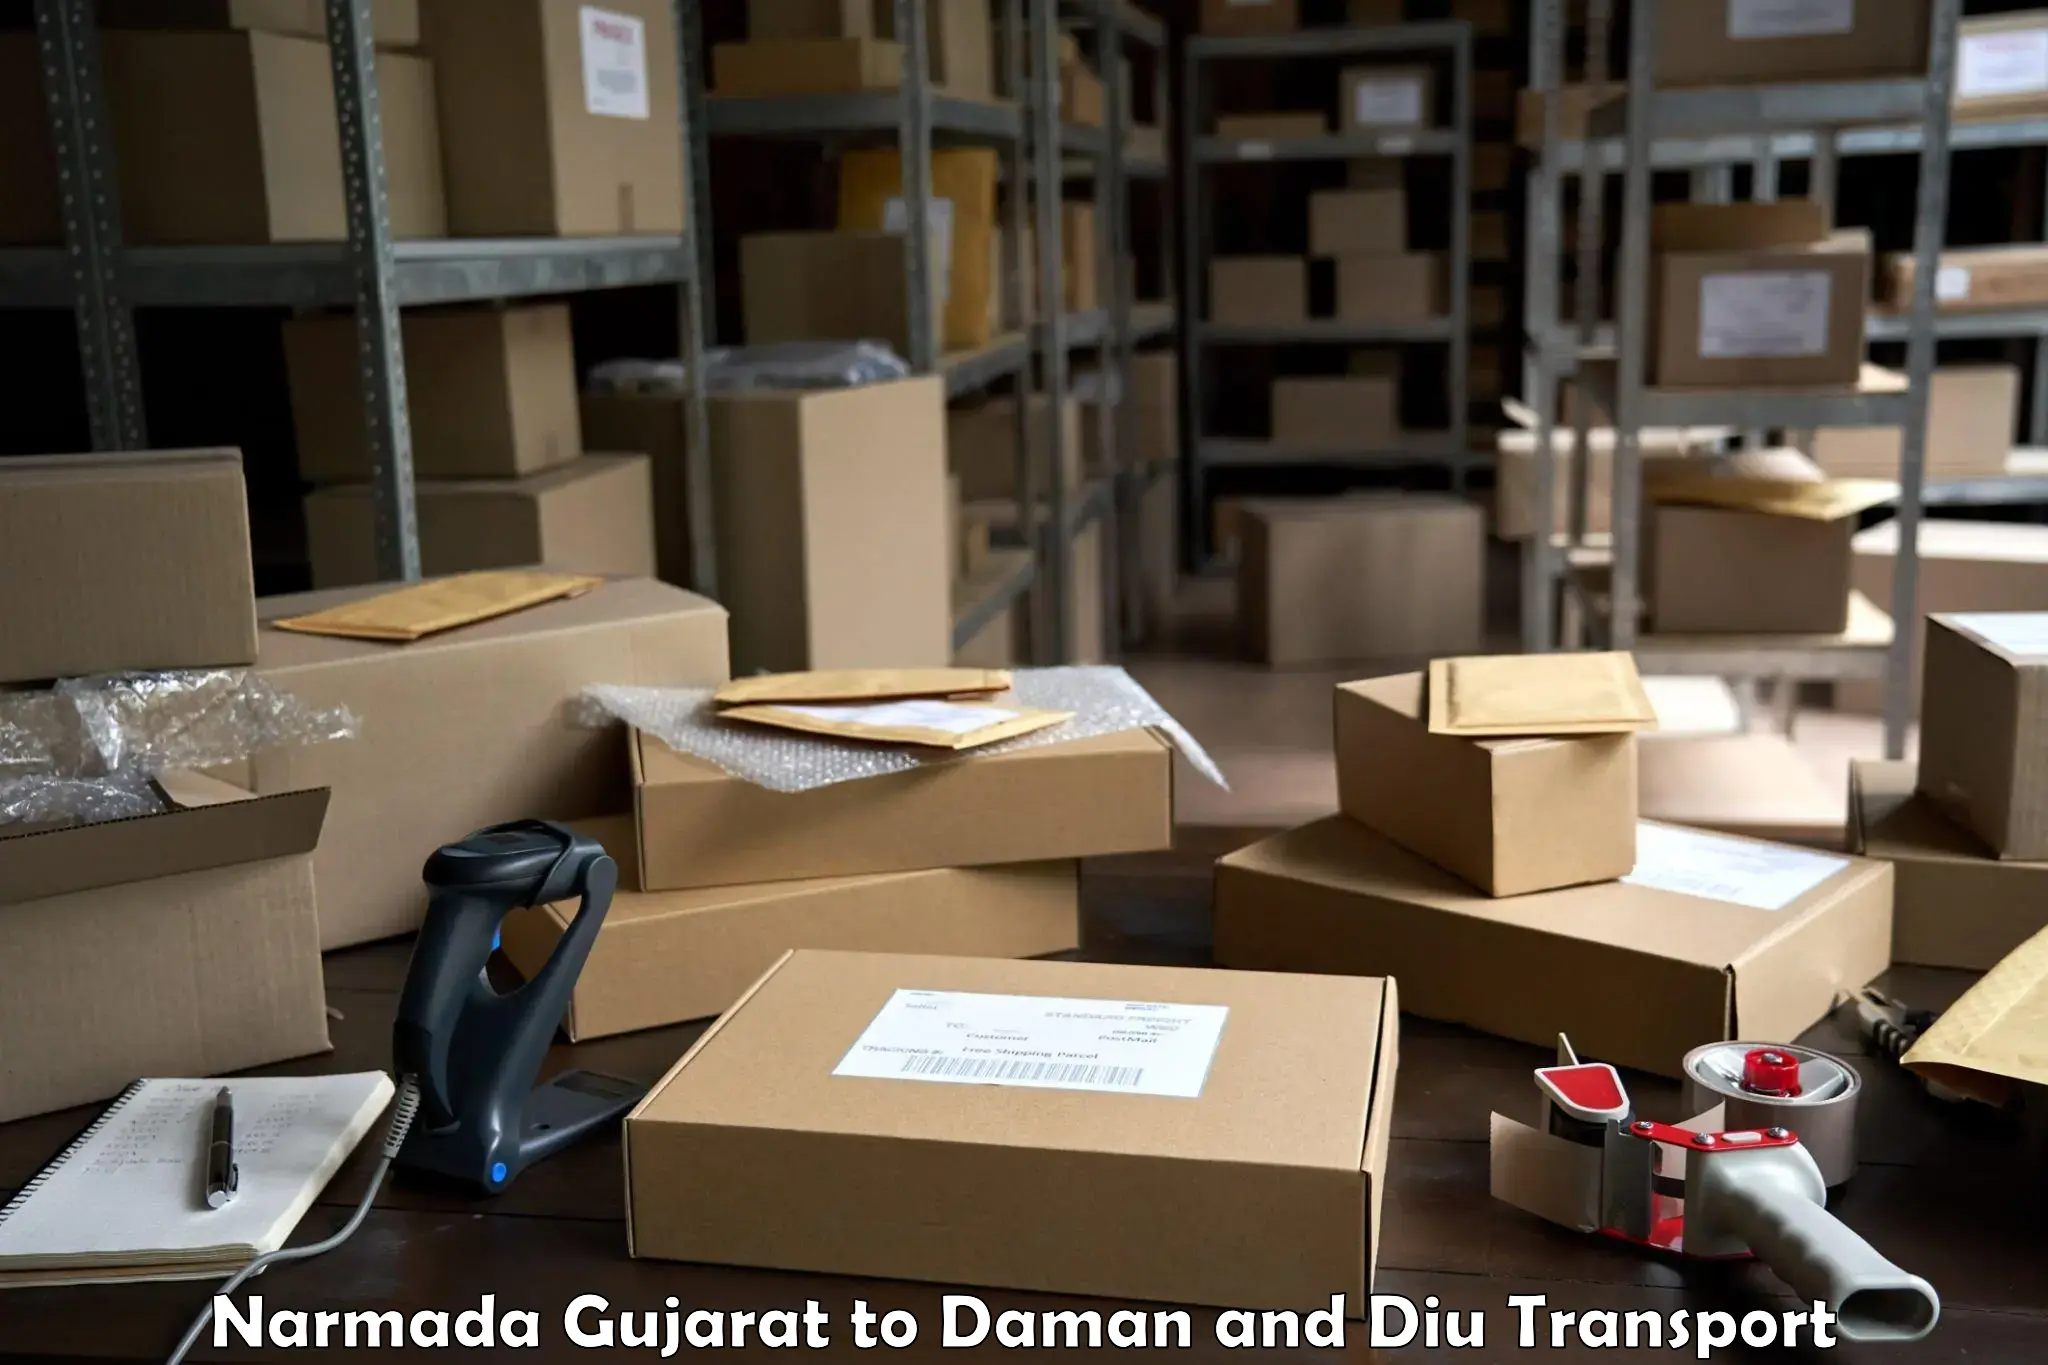 Delivery service Narmada Gujarat to Daman